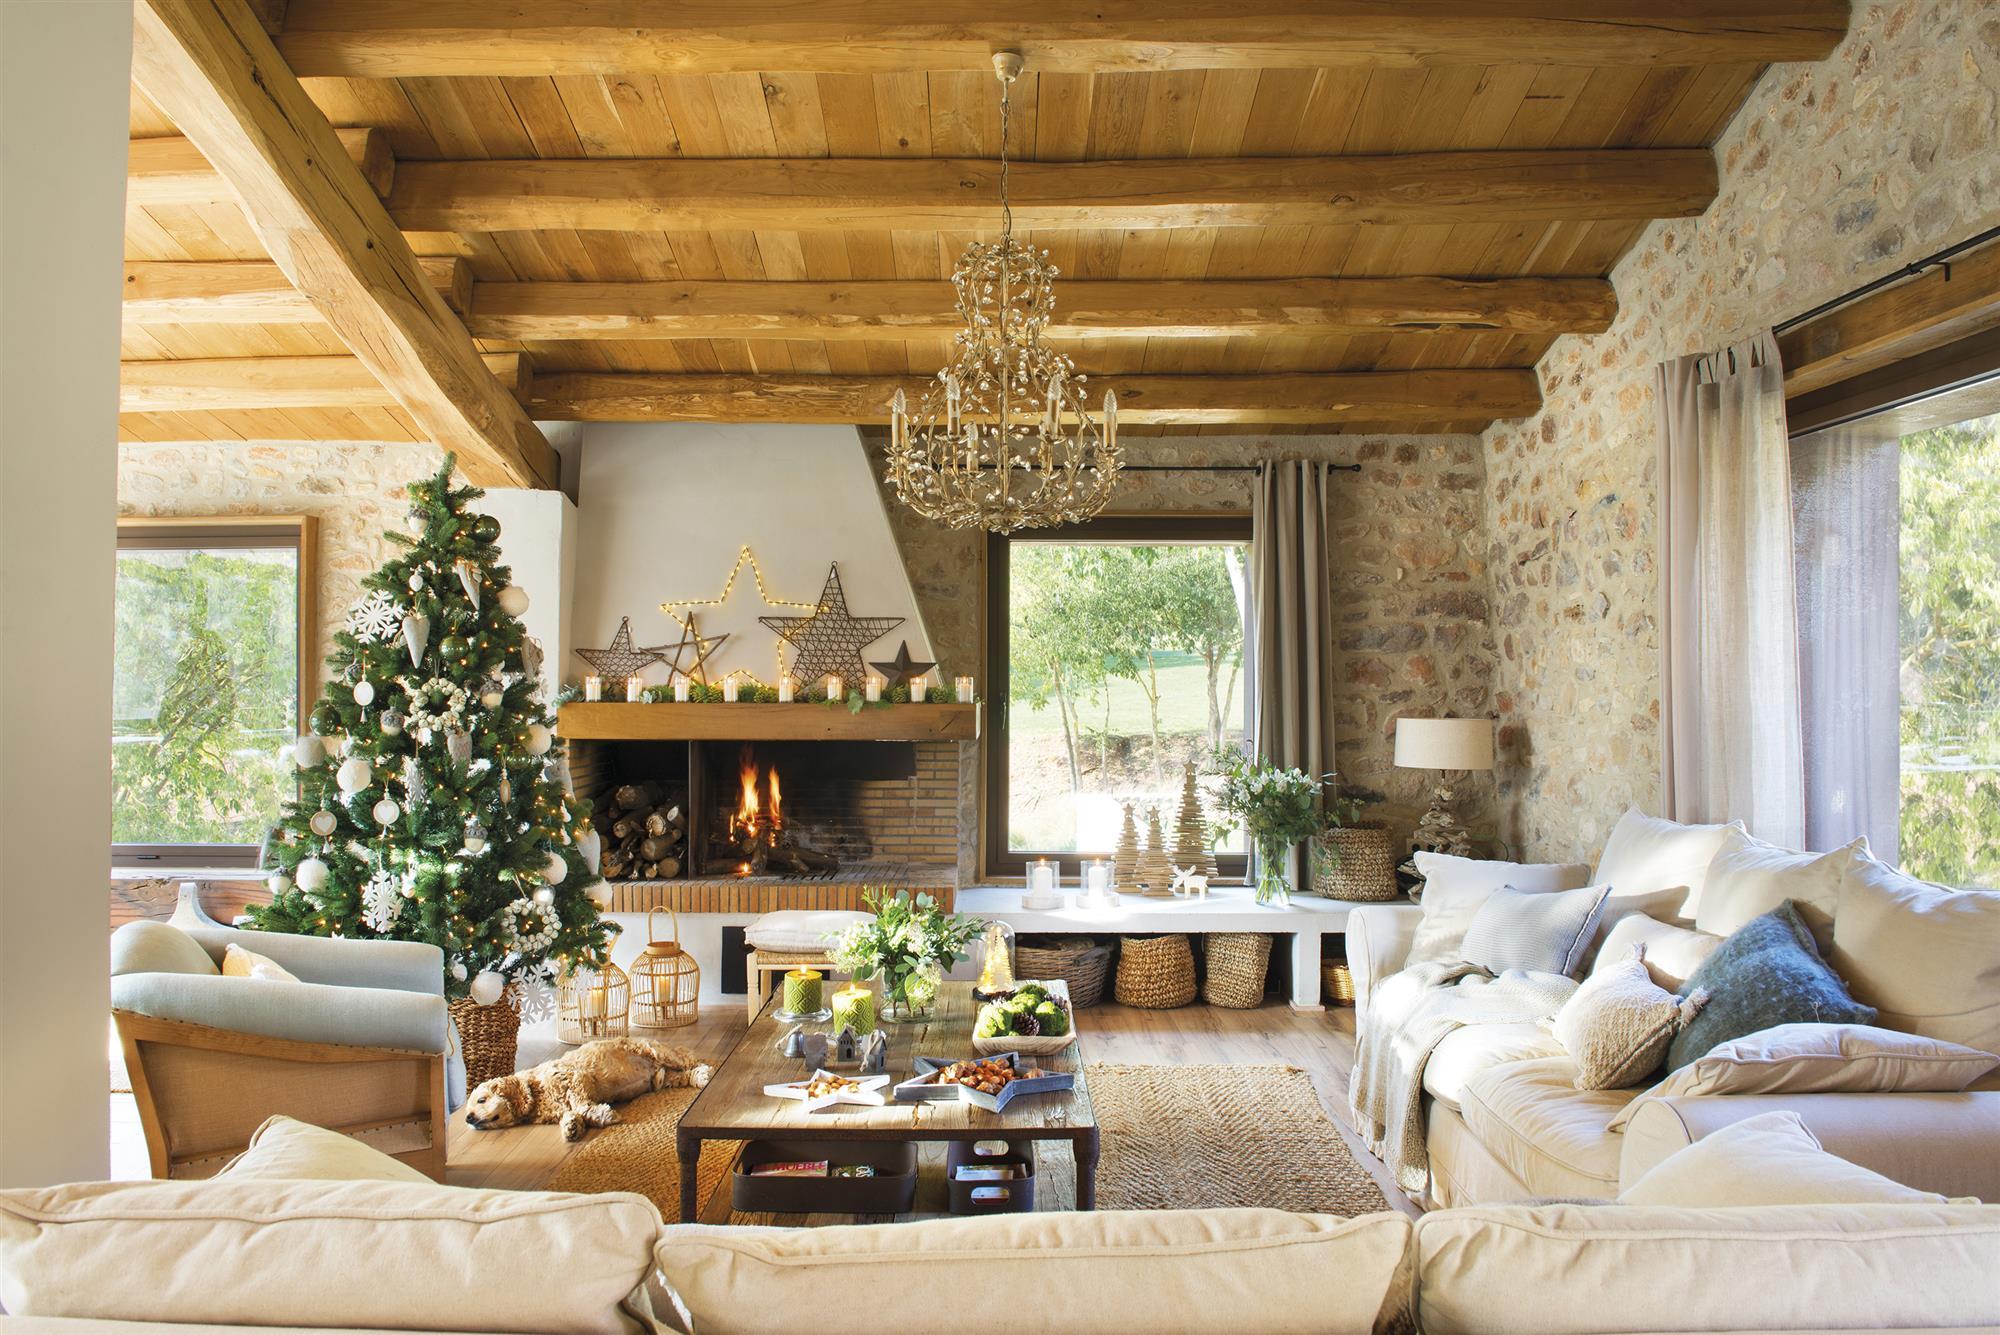 Spanyol mediterrán ház karácsonyfával